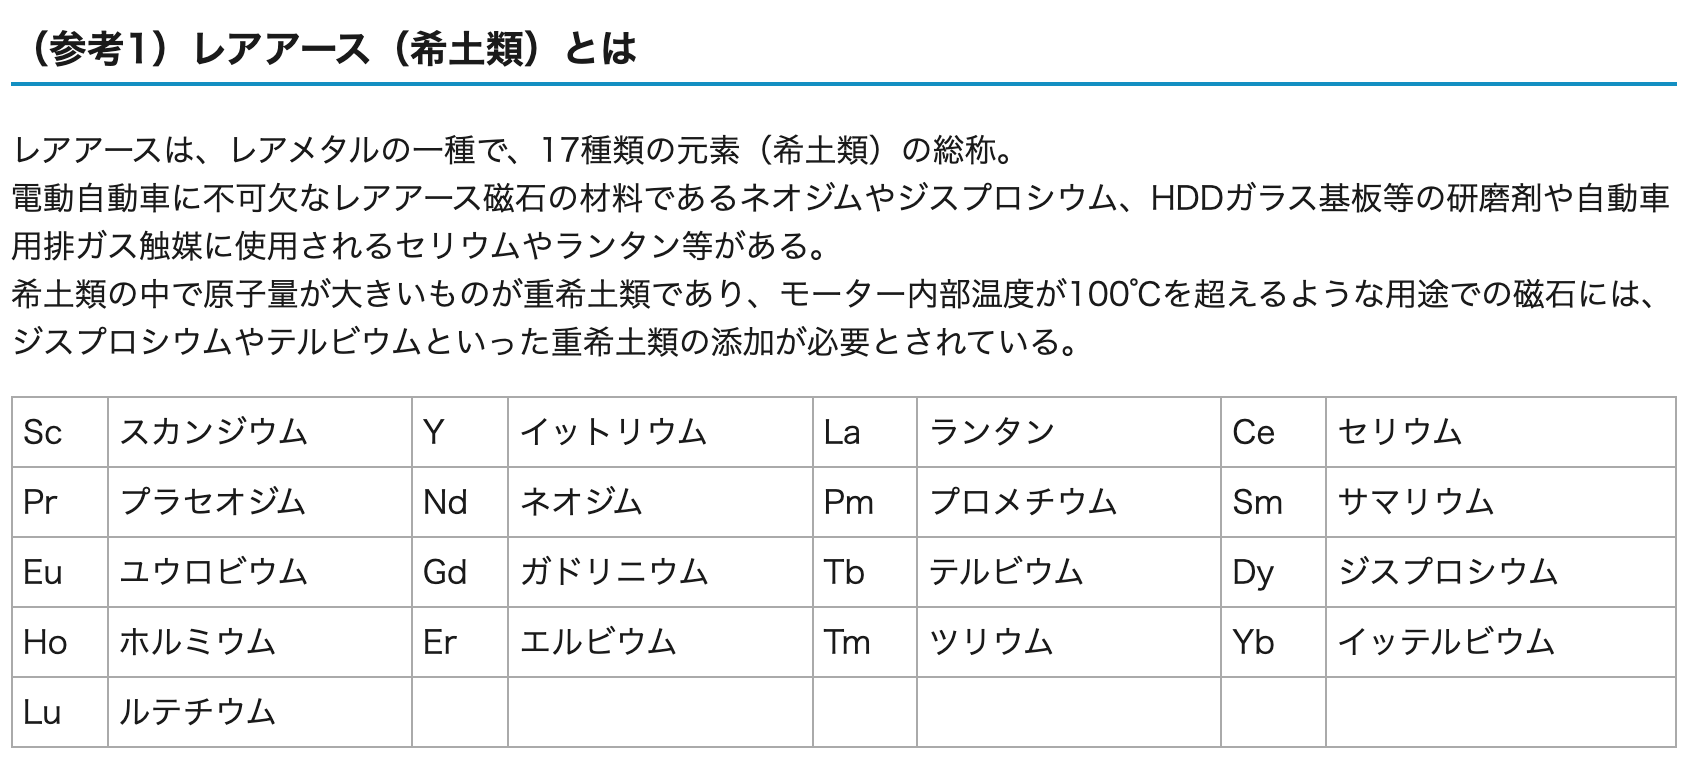 レアアースの種類。経産省プレスリリース「日本として初となるレアアース（重希土類）の権益を獲得します」より抜粋。